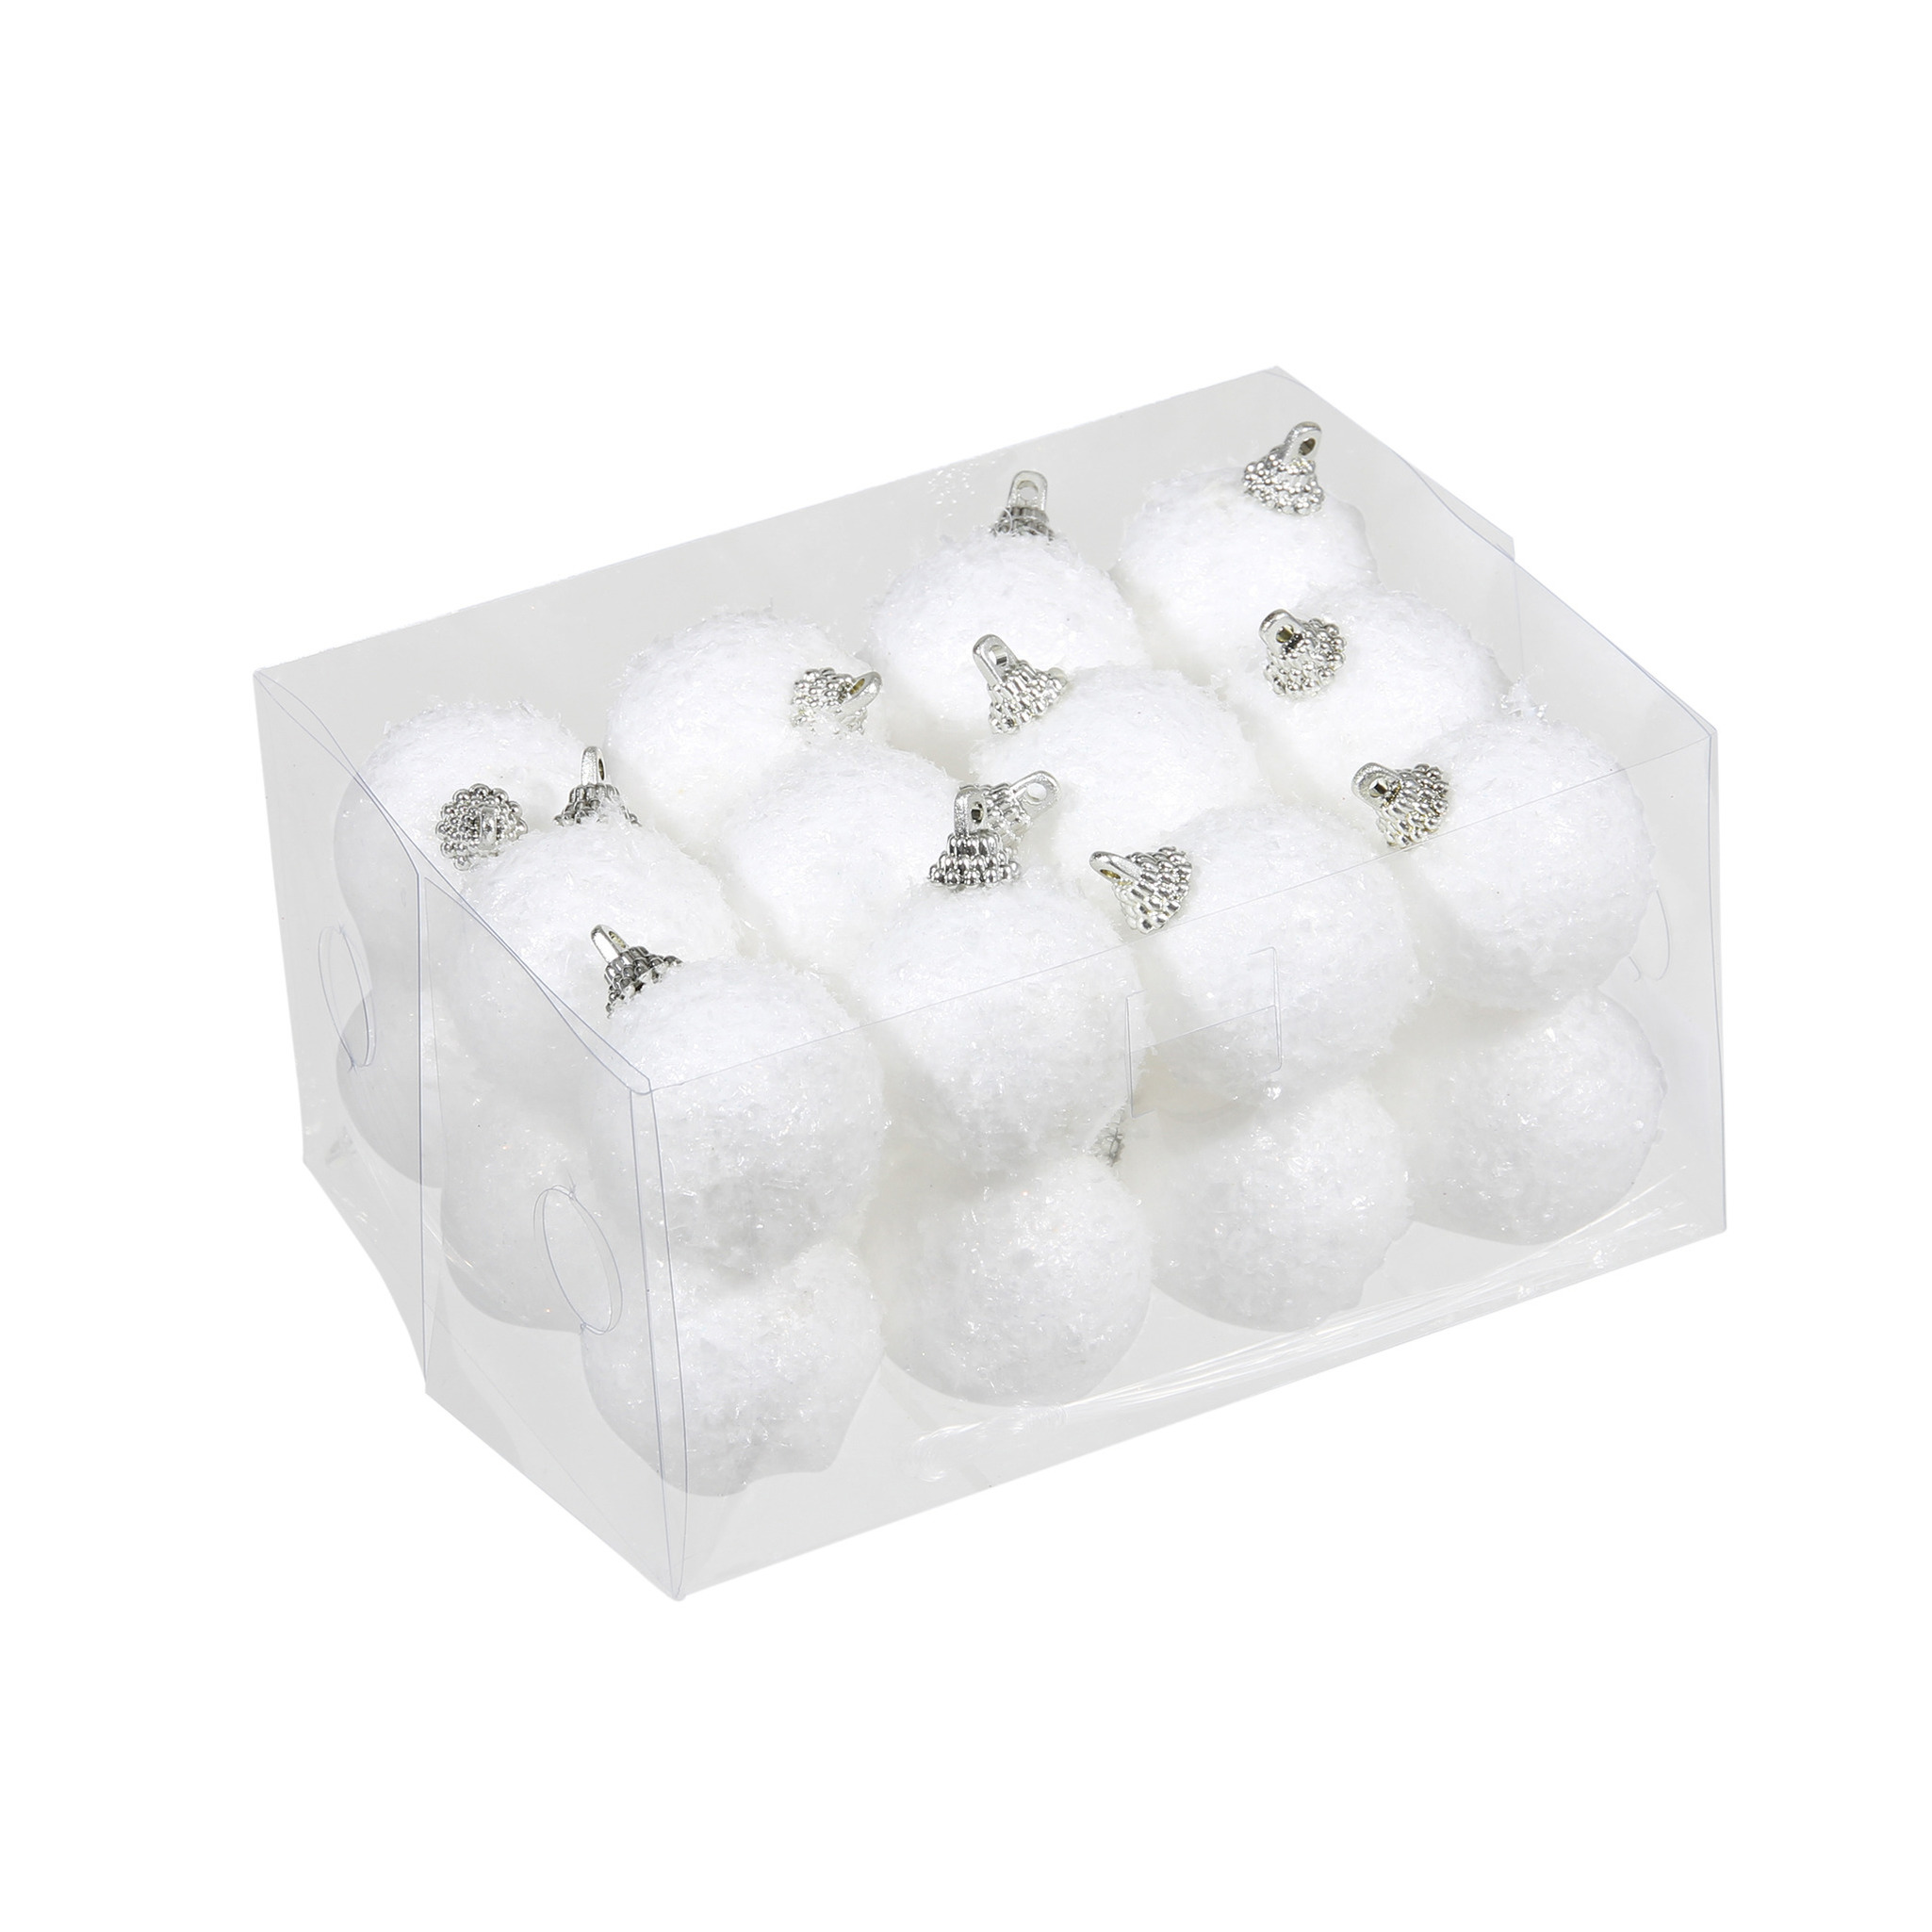 24x Kleine kunststof kerstballen met sneeuw effect wit 4 cm